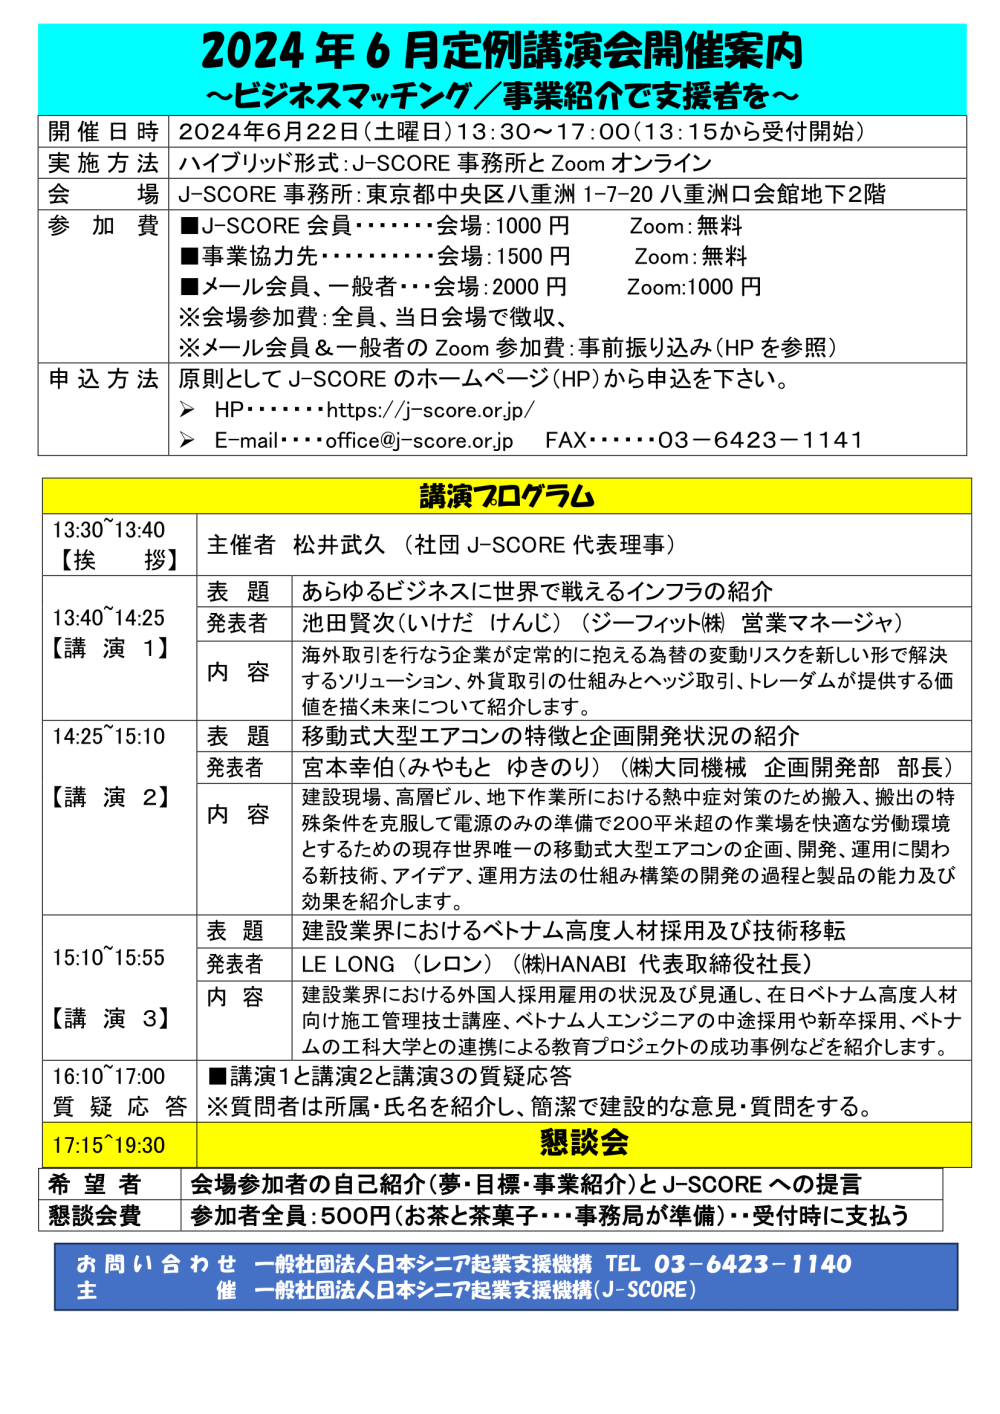 開催日時：令和6年6月22日（土）13：30～17：00（受付開始：13：15～）　
会場：Zoom参加とJ-SCORE事務所（東京都中央区八重洲1-7-20八重洲口会館地下２階）
主催：一般社団法人 日本シニア起業支援機構（J-SCORE）